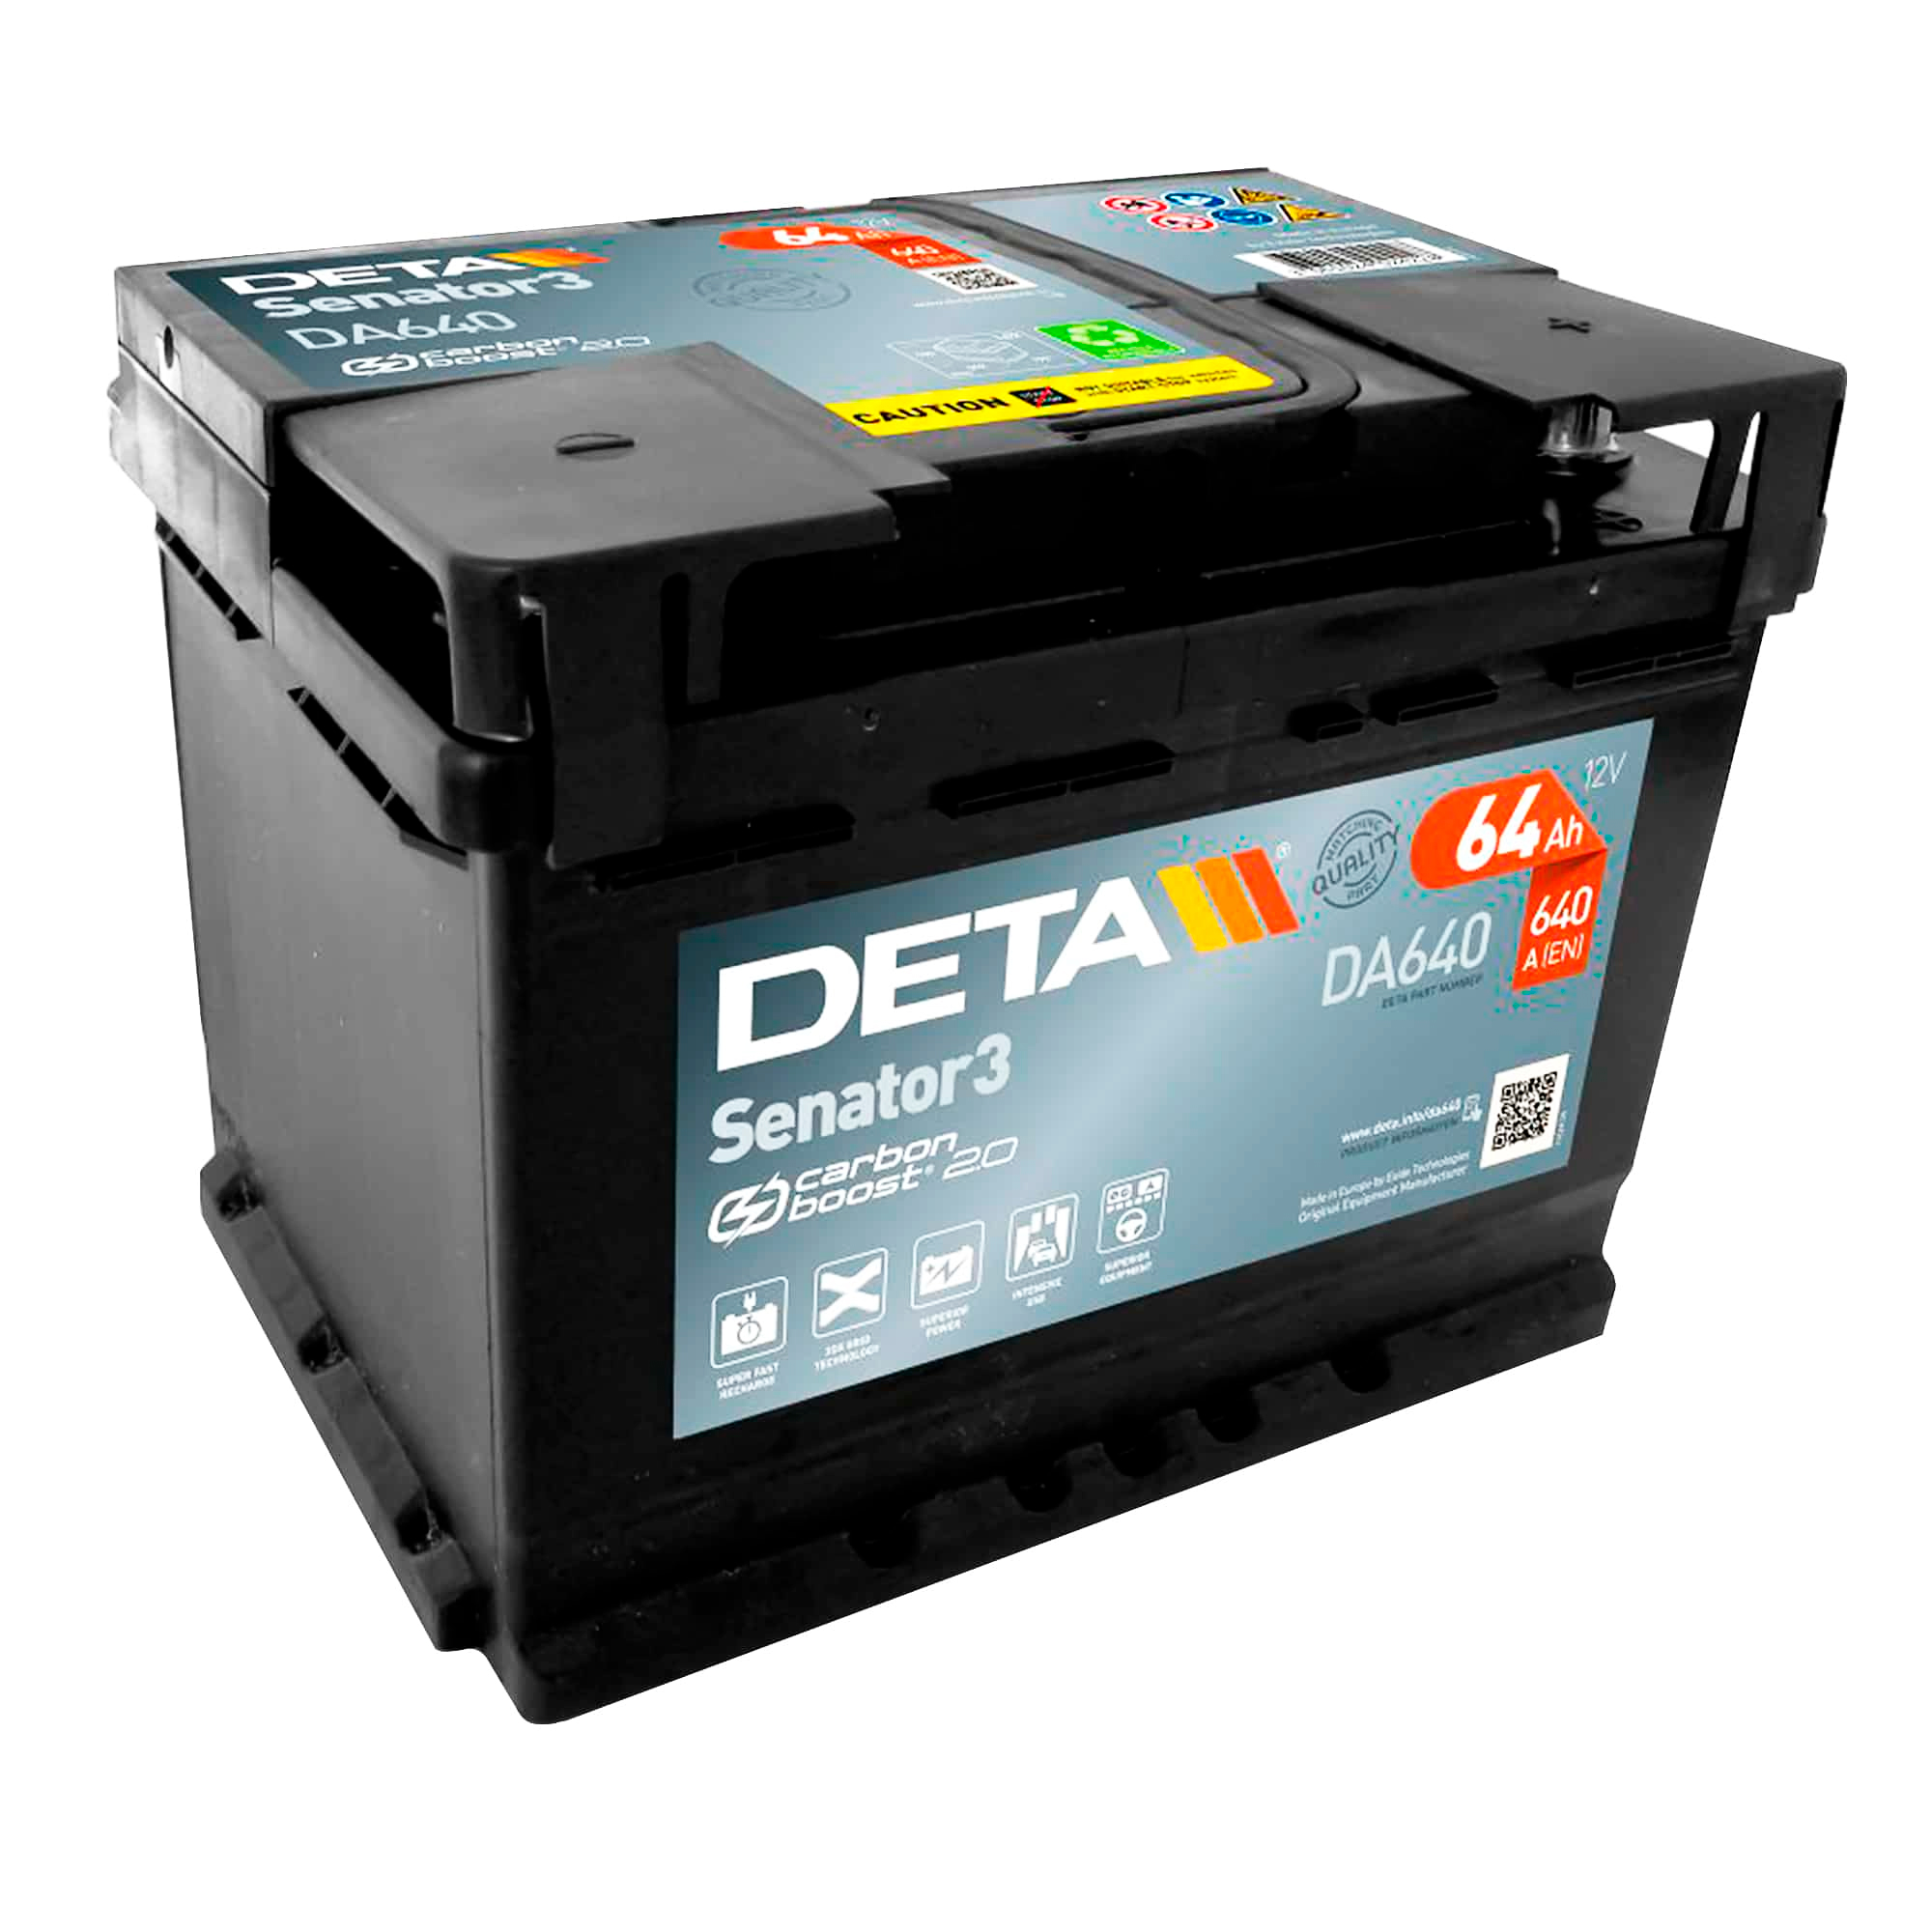 Автомобильный аккумулятор DETA 6CT-64Ah АзЕ Senator 3 (DA640)